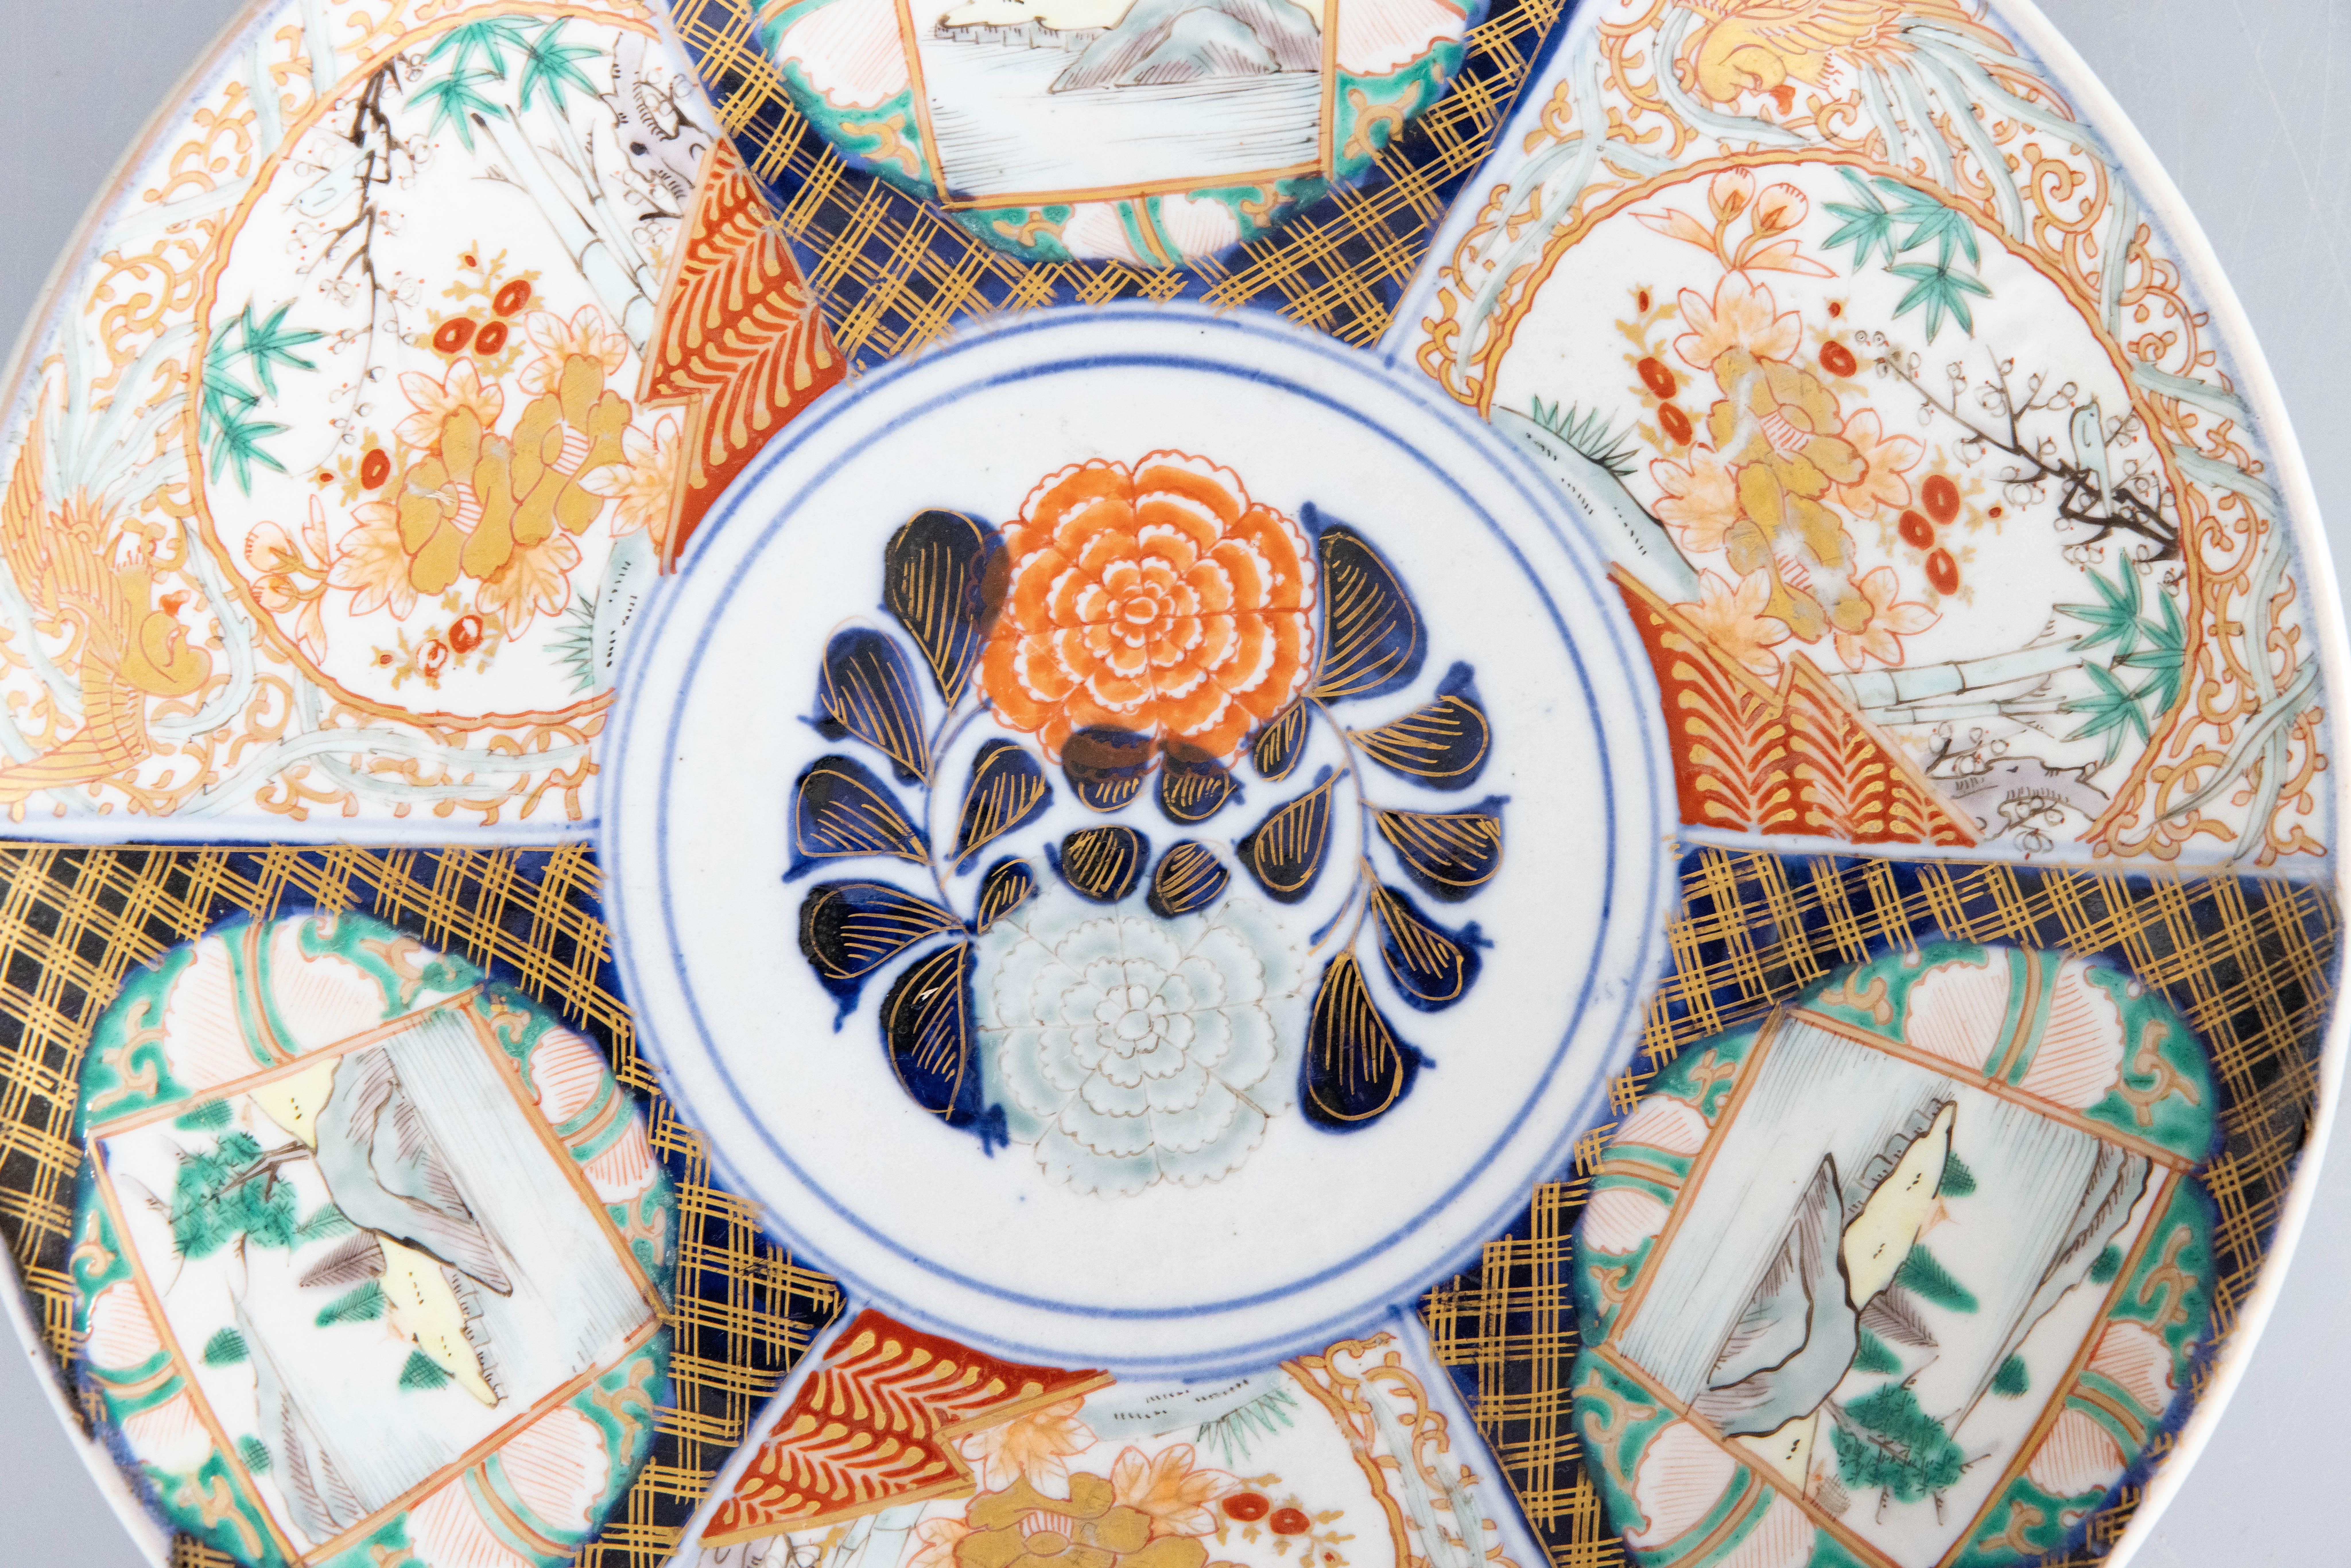 Ein wunderschönes japanisches Imari-Porzellan-Ladegerät aus der Meiji-Zeit des 19. Jahrhunderts mit einem handgemalten Blumenmuster in den traditionellen Imari-Farben und atemberaubenden Goldakzenten. Diese feine große Platte hat schöne handgemalte